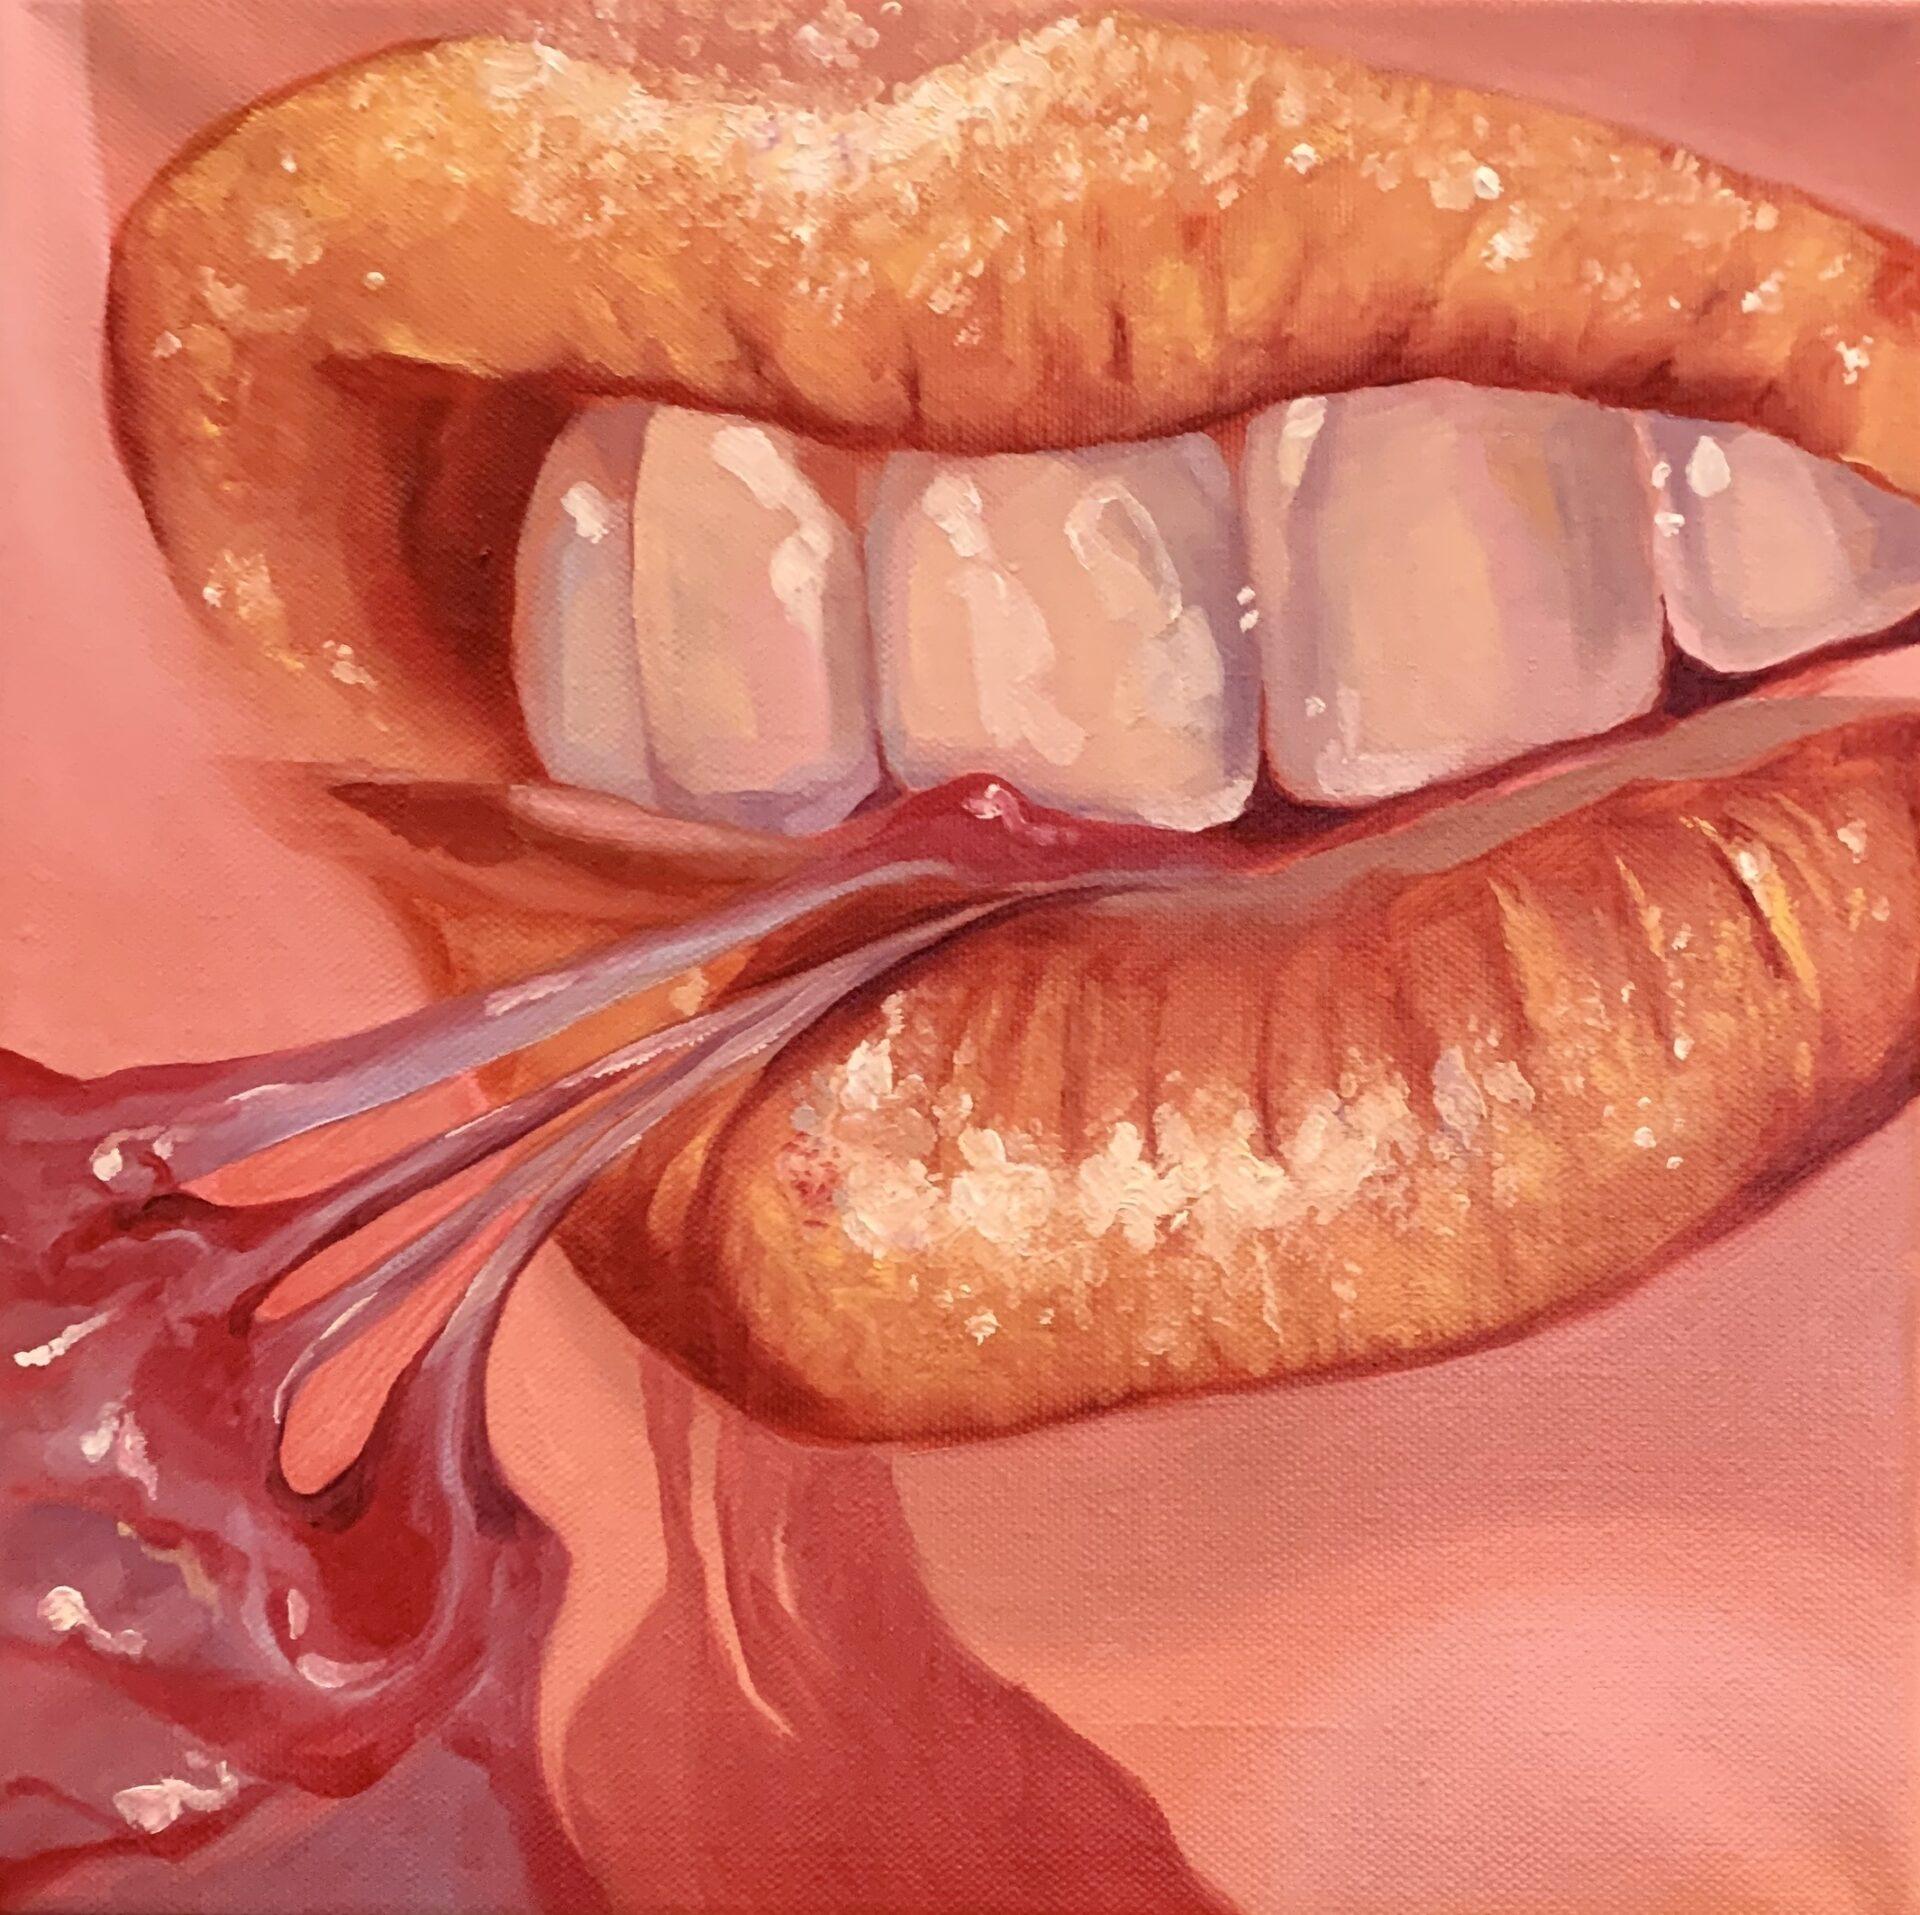 Dieses Gemälde wurde auf der Grundlage von 2 verschiedenen Bildern geschaffen, dem mit dem Mund und dem mit dem Fleisch.

Auf dem Bild greifen die Zähne in die Seite einer Herzkammer.

Diese Verbindung zwischen den beiden Szenen erlaubt es dem